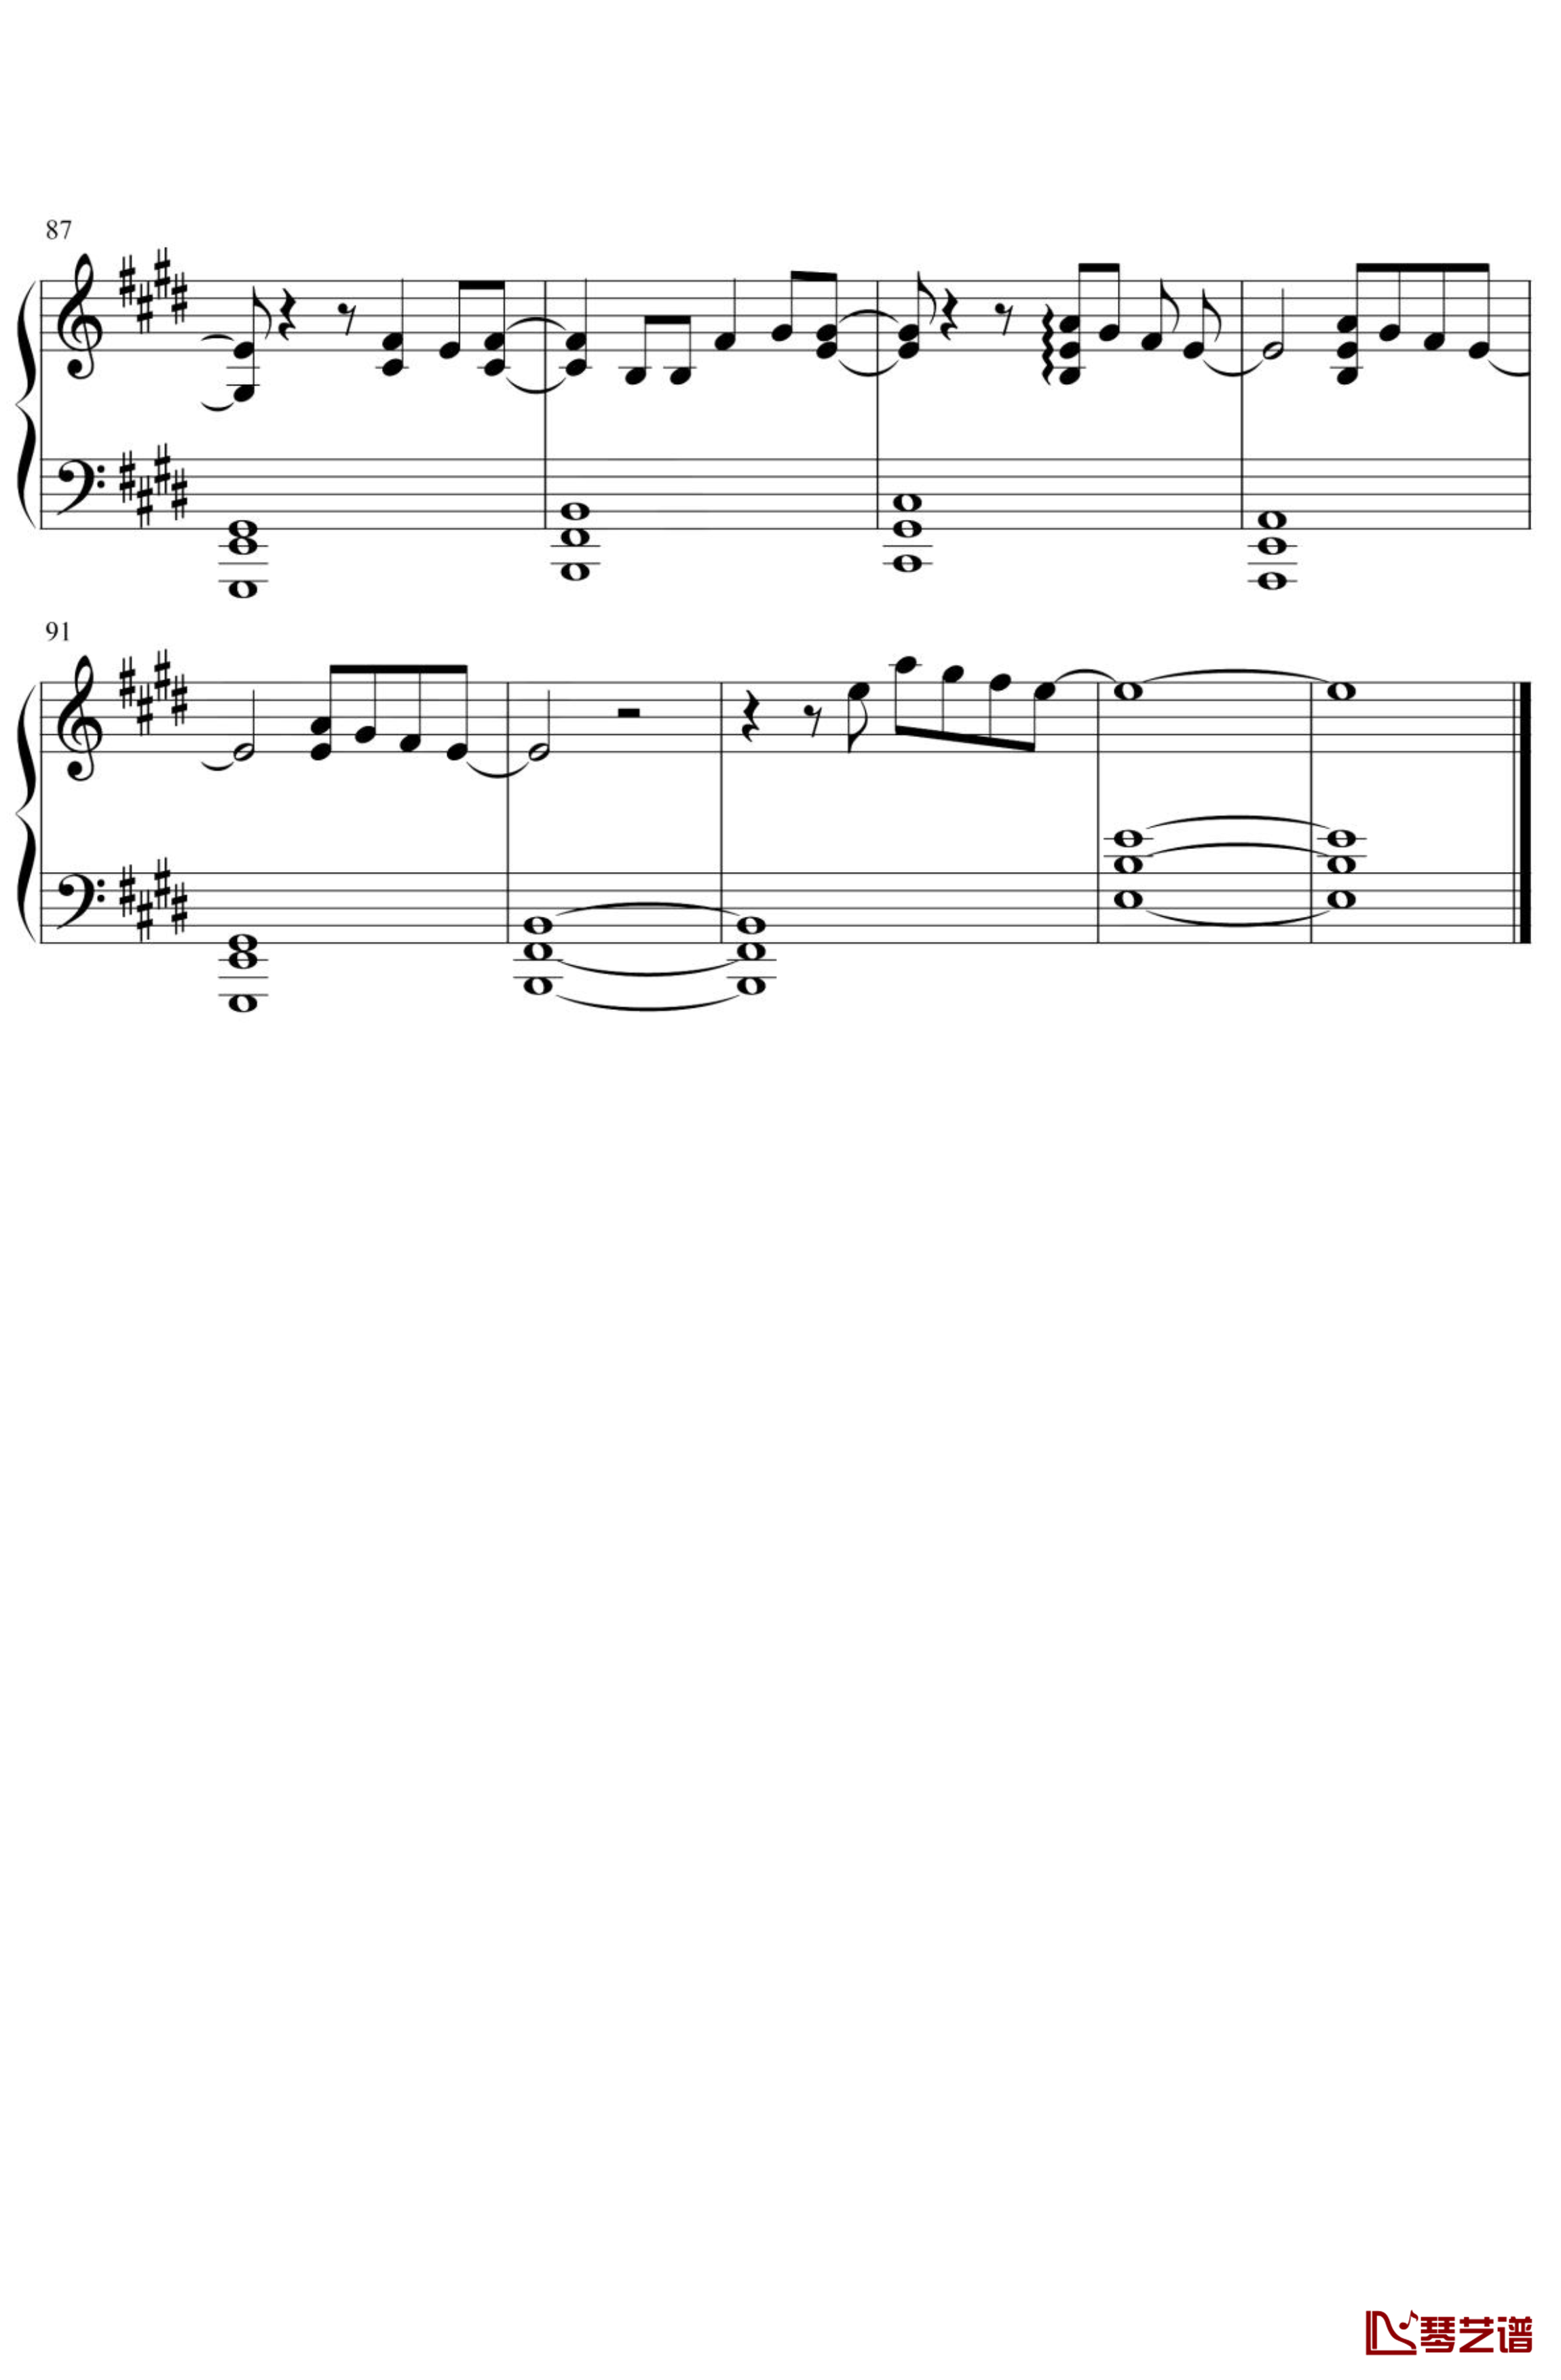 天气之子-グランドエスケープ钢琴谱 简化5